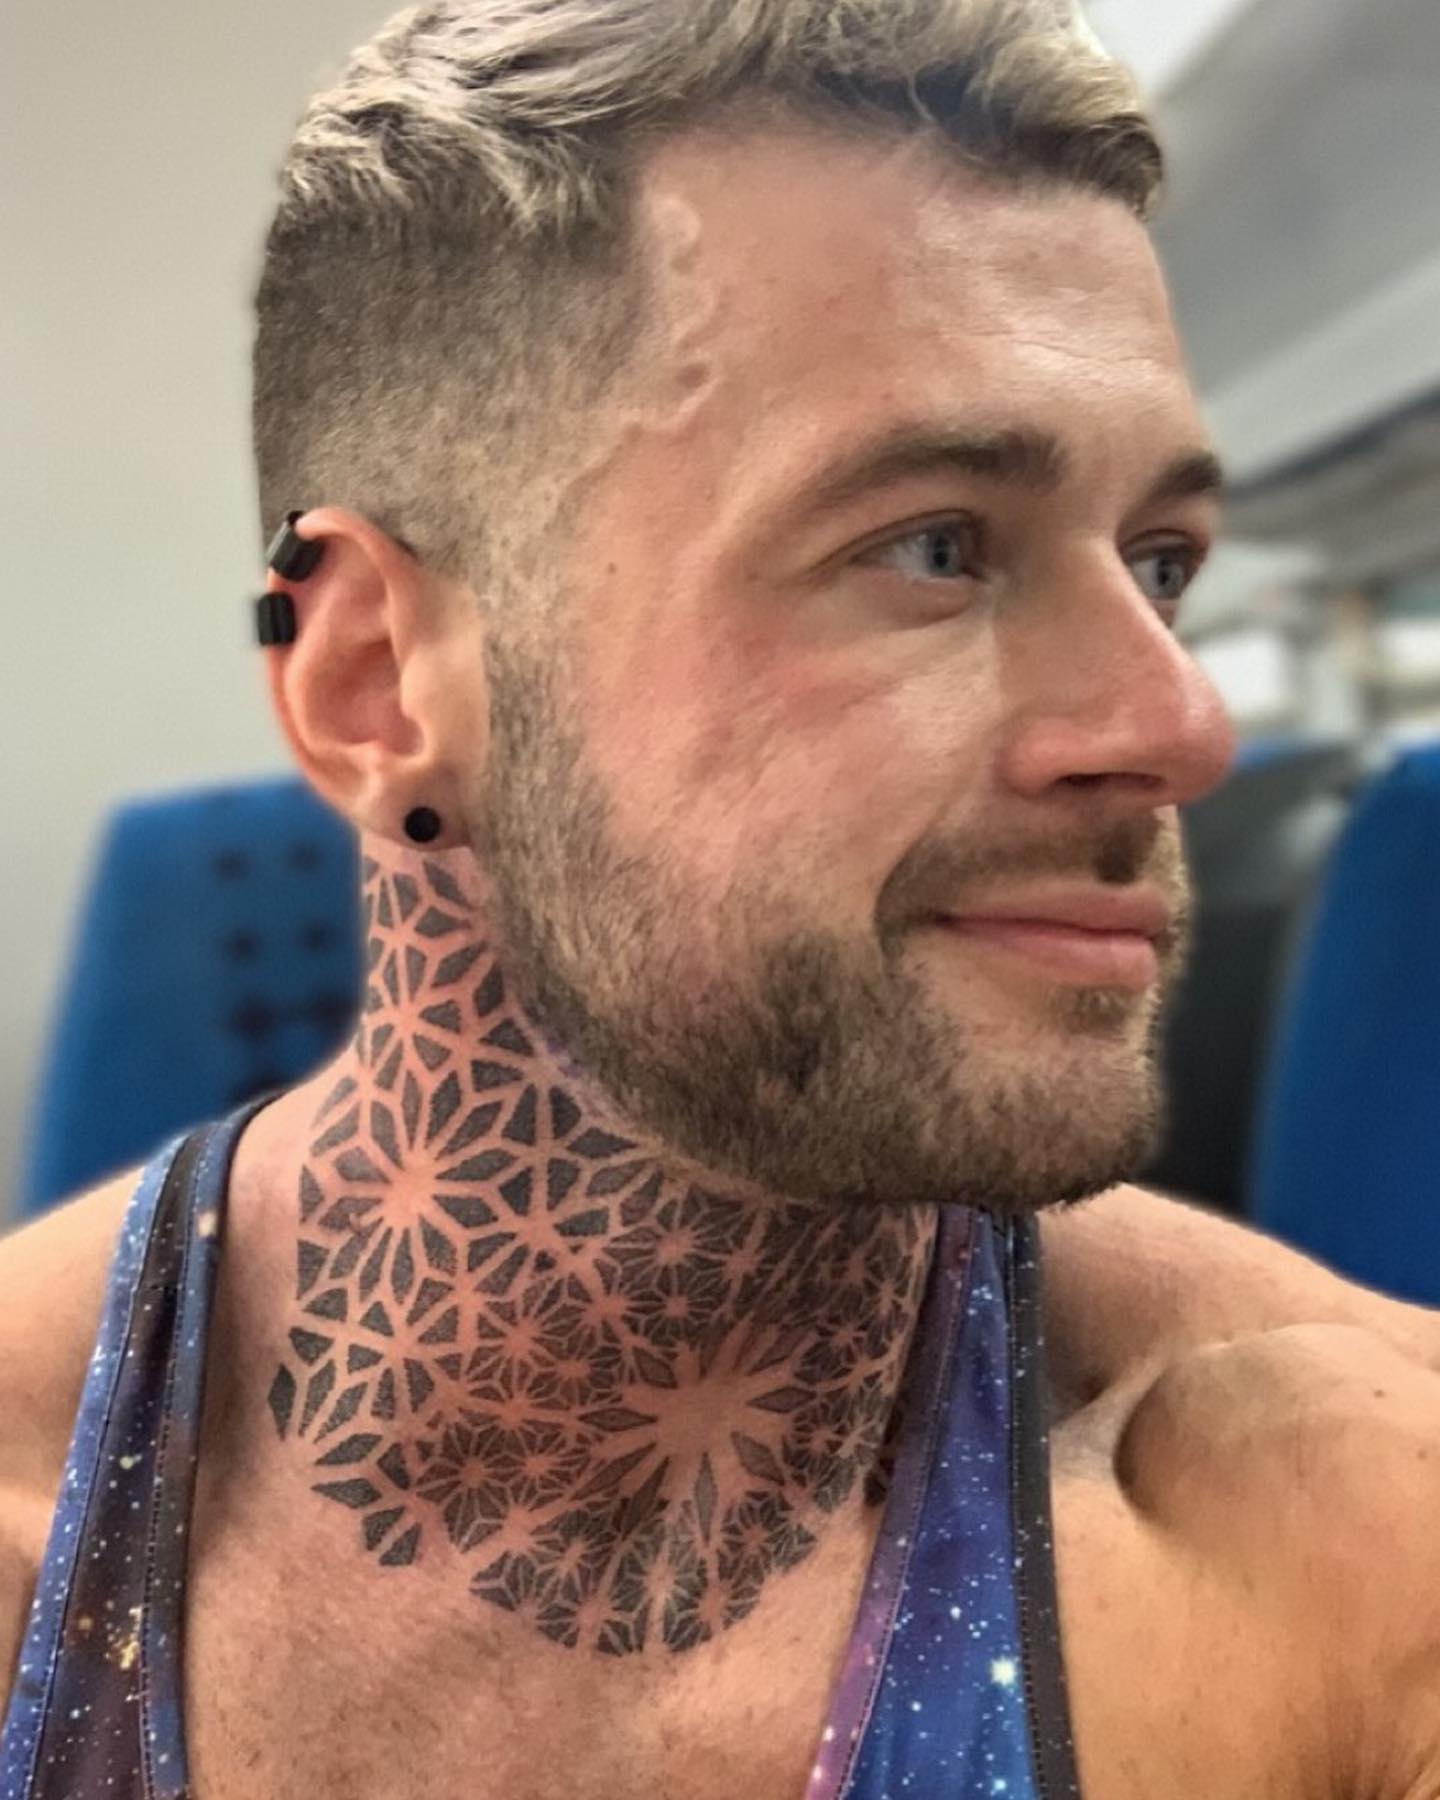 großes Tattoo am Hals von Männern